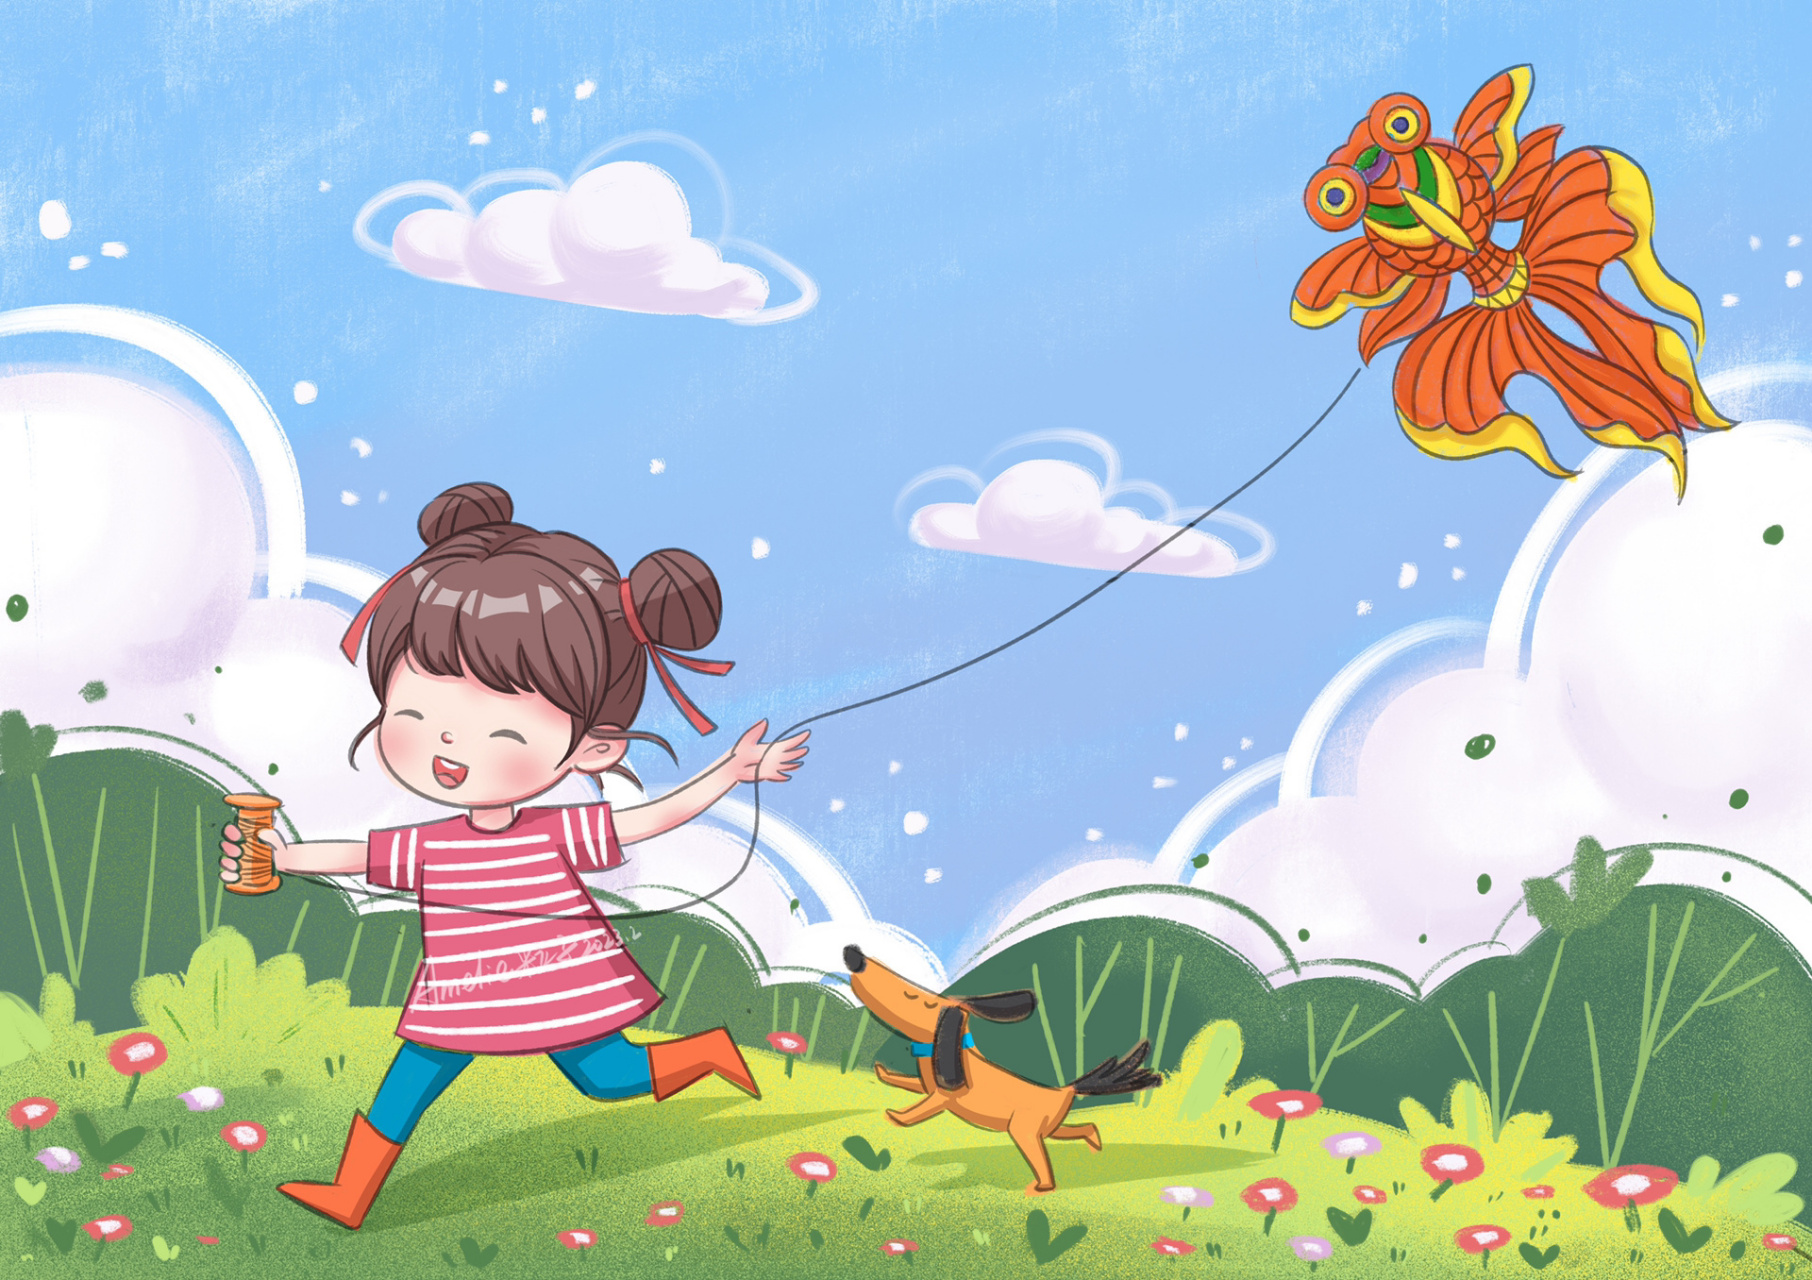 原创风筝儿童插画,这两天在构思的放风筝主题儿童插画,今天终于完成了